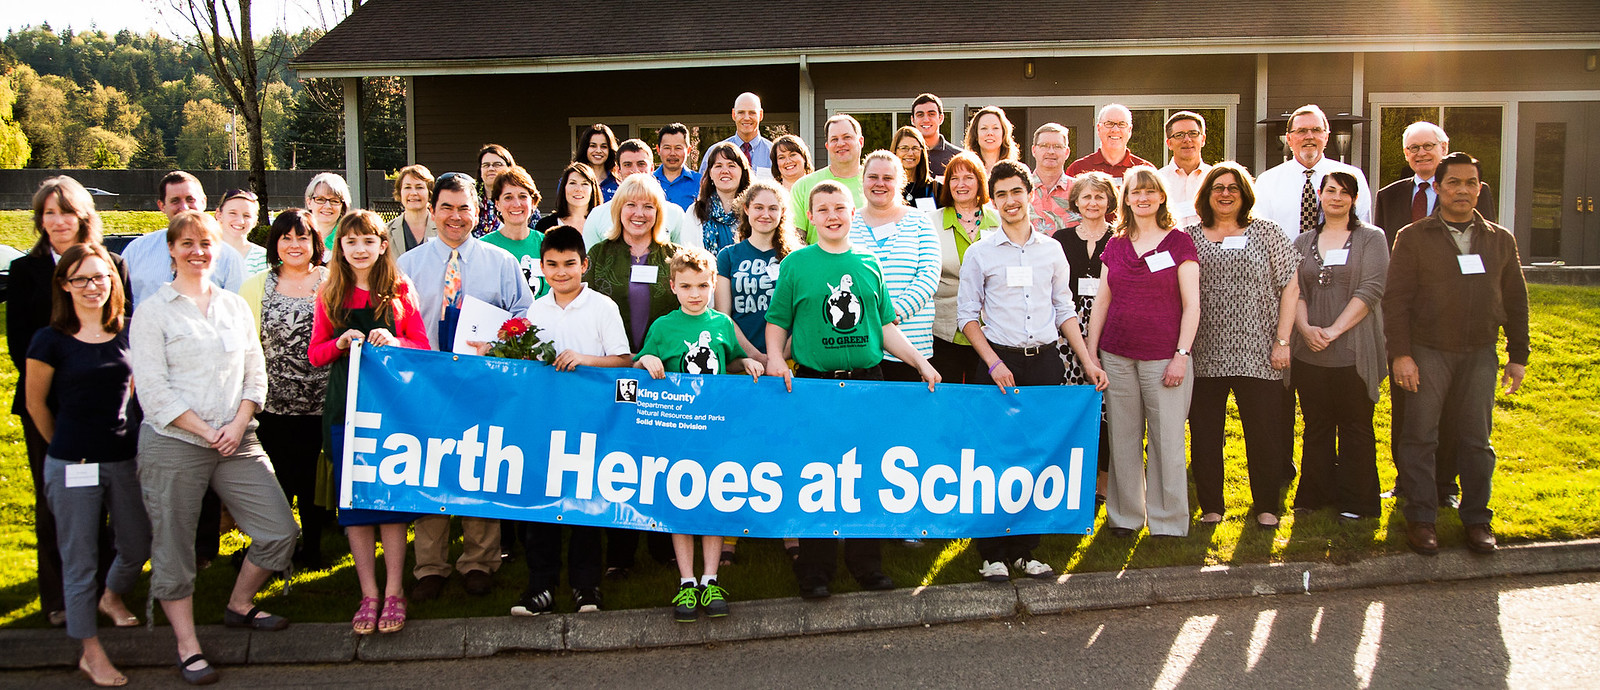 2013 Earth Heroes at School